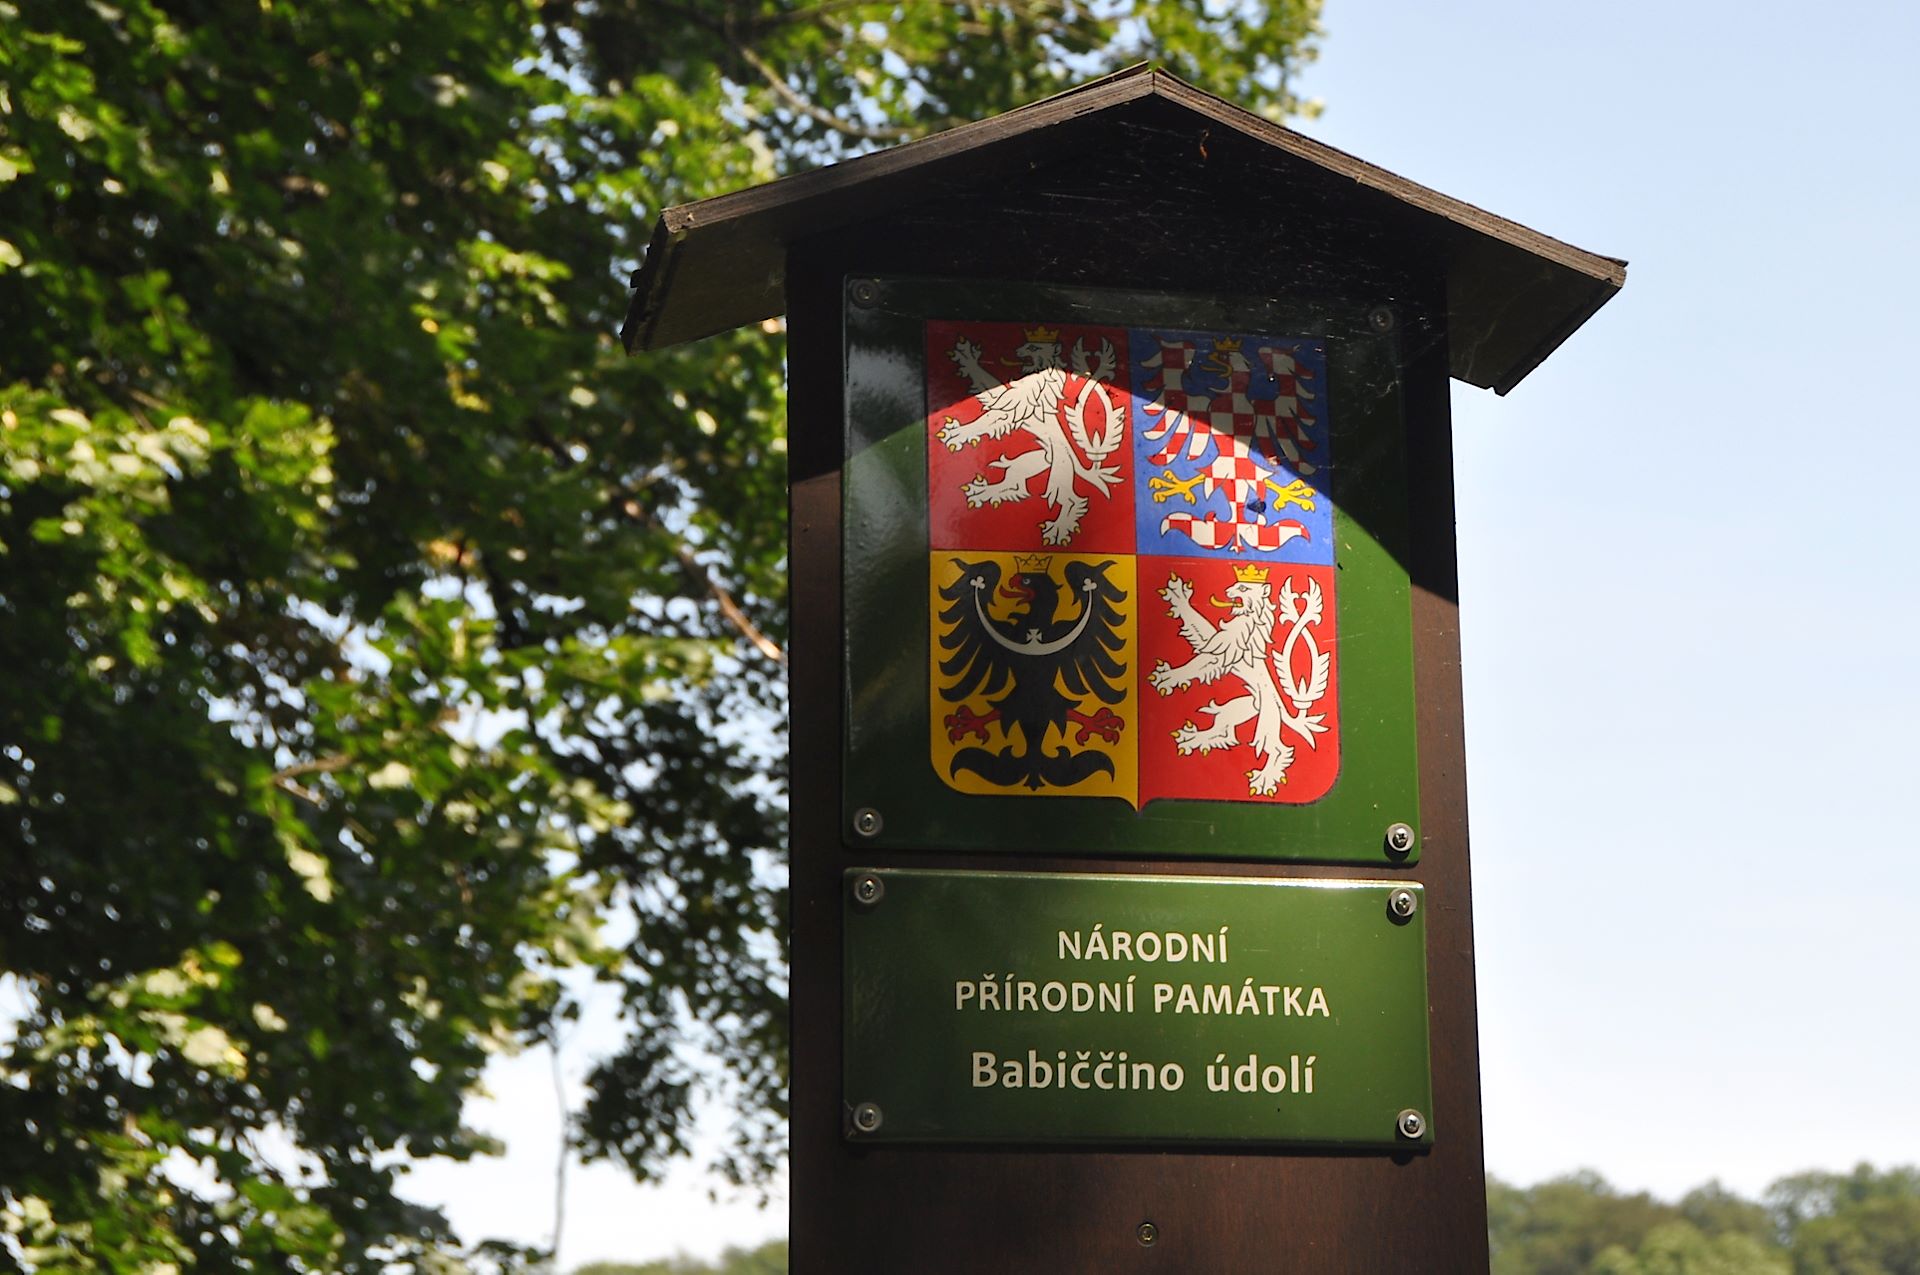 Nationales tschechisches Naturdenkmal 